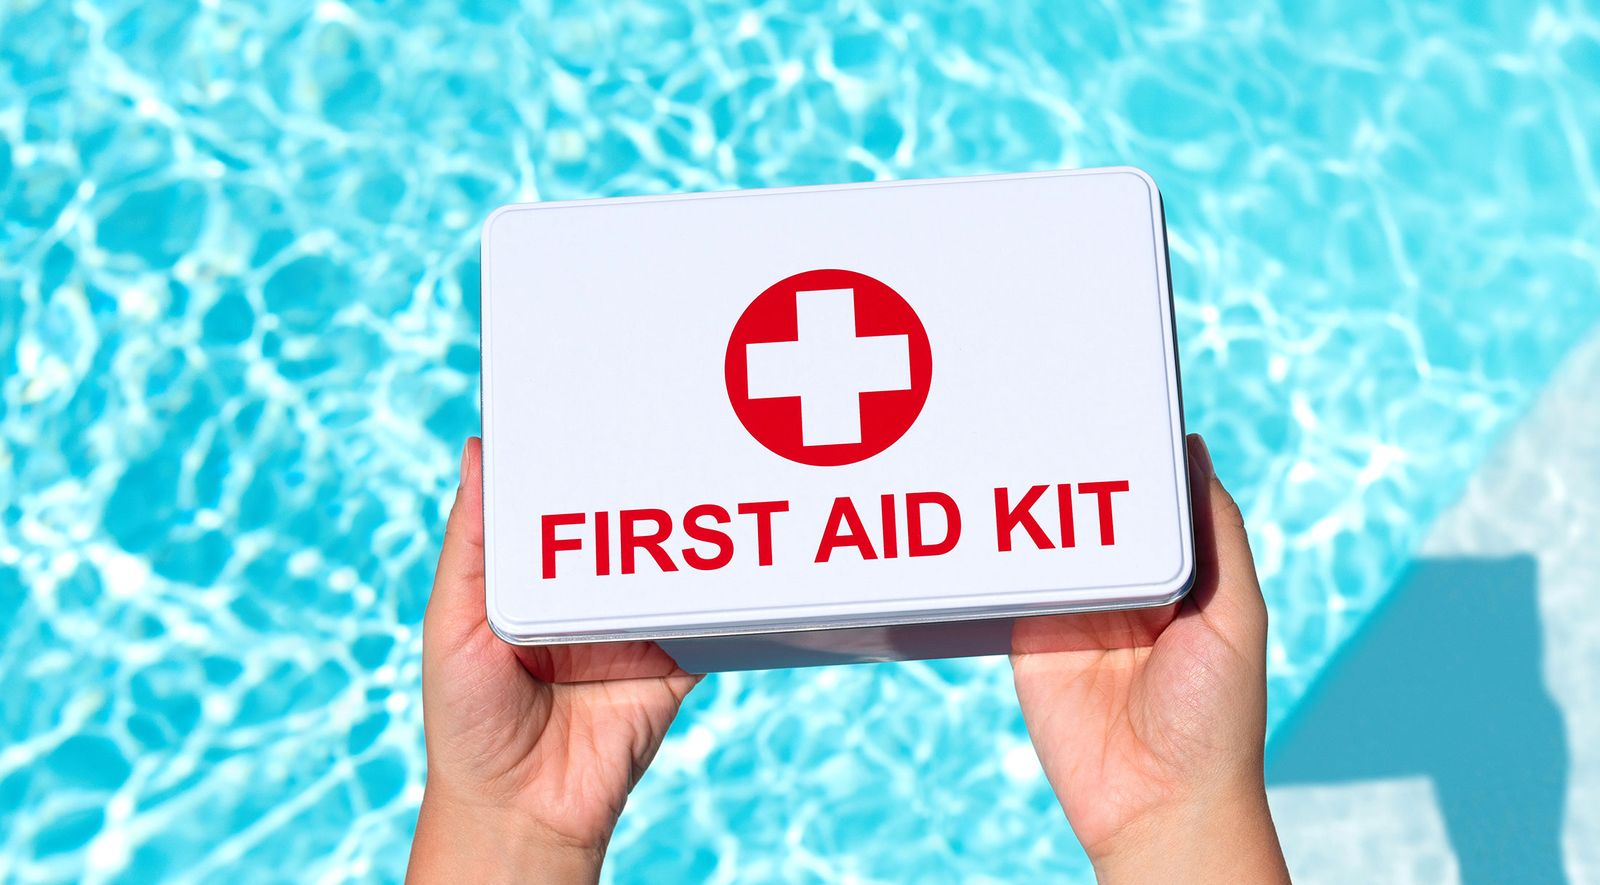 Le vacanze sono dietro l’angolo: cosa deve contenere un kit di primo soccorso?